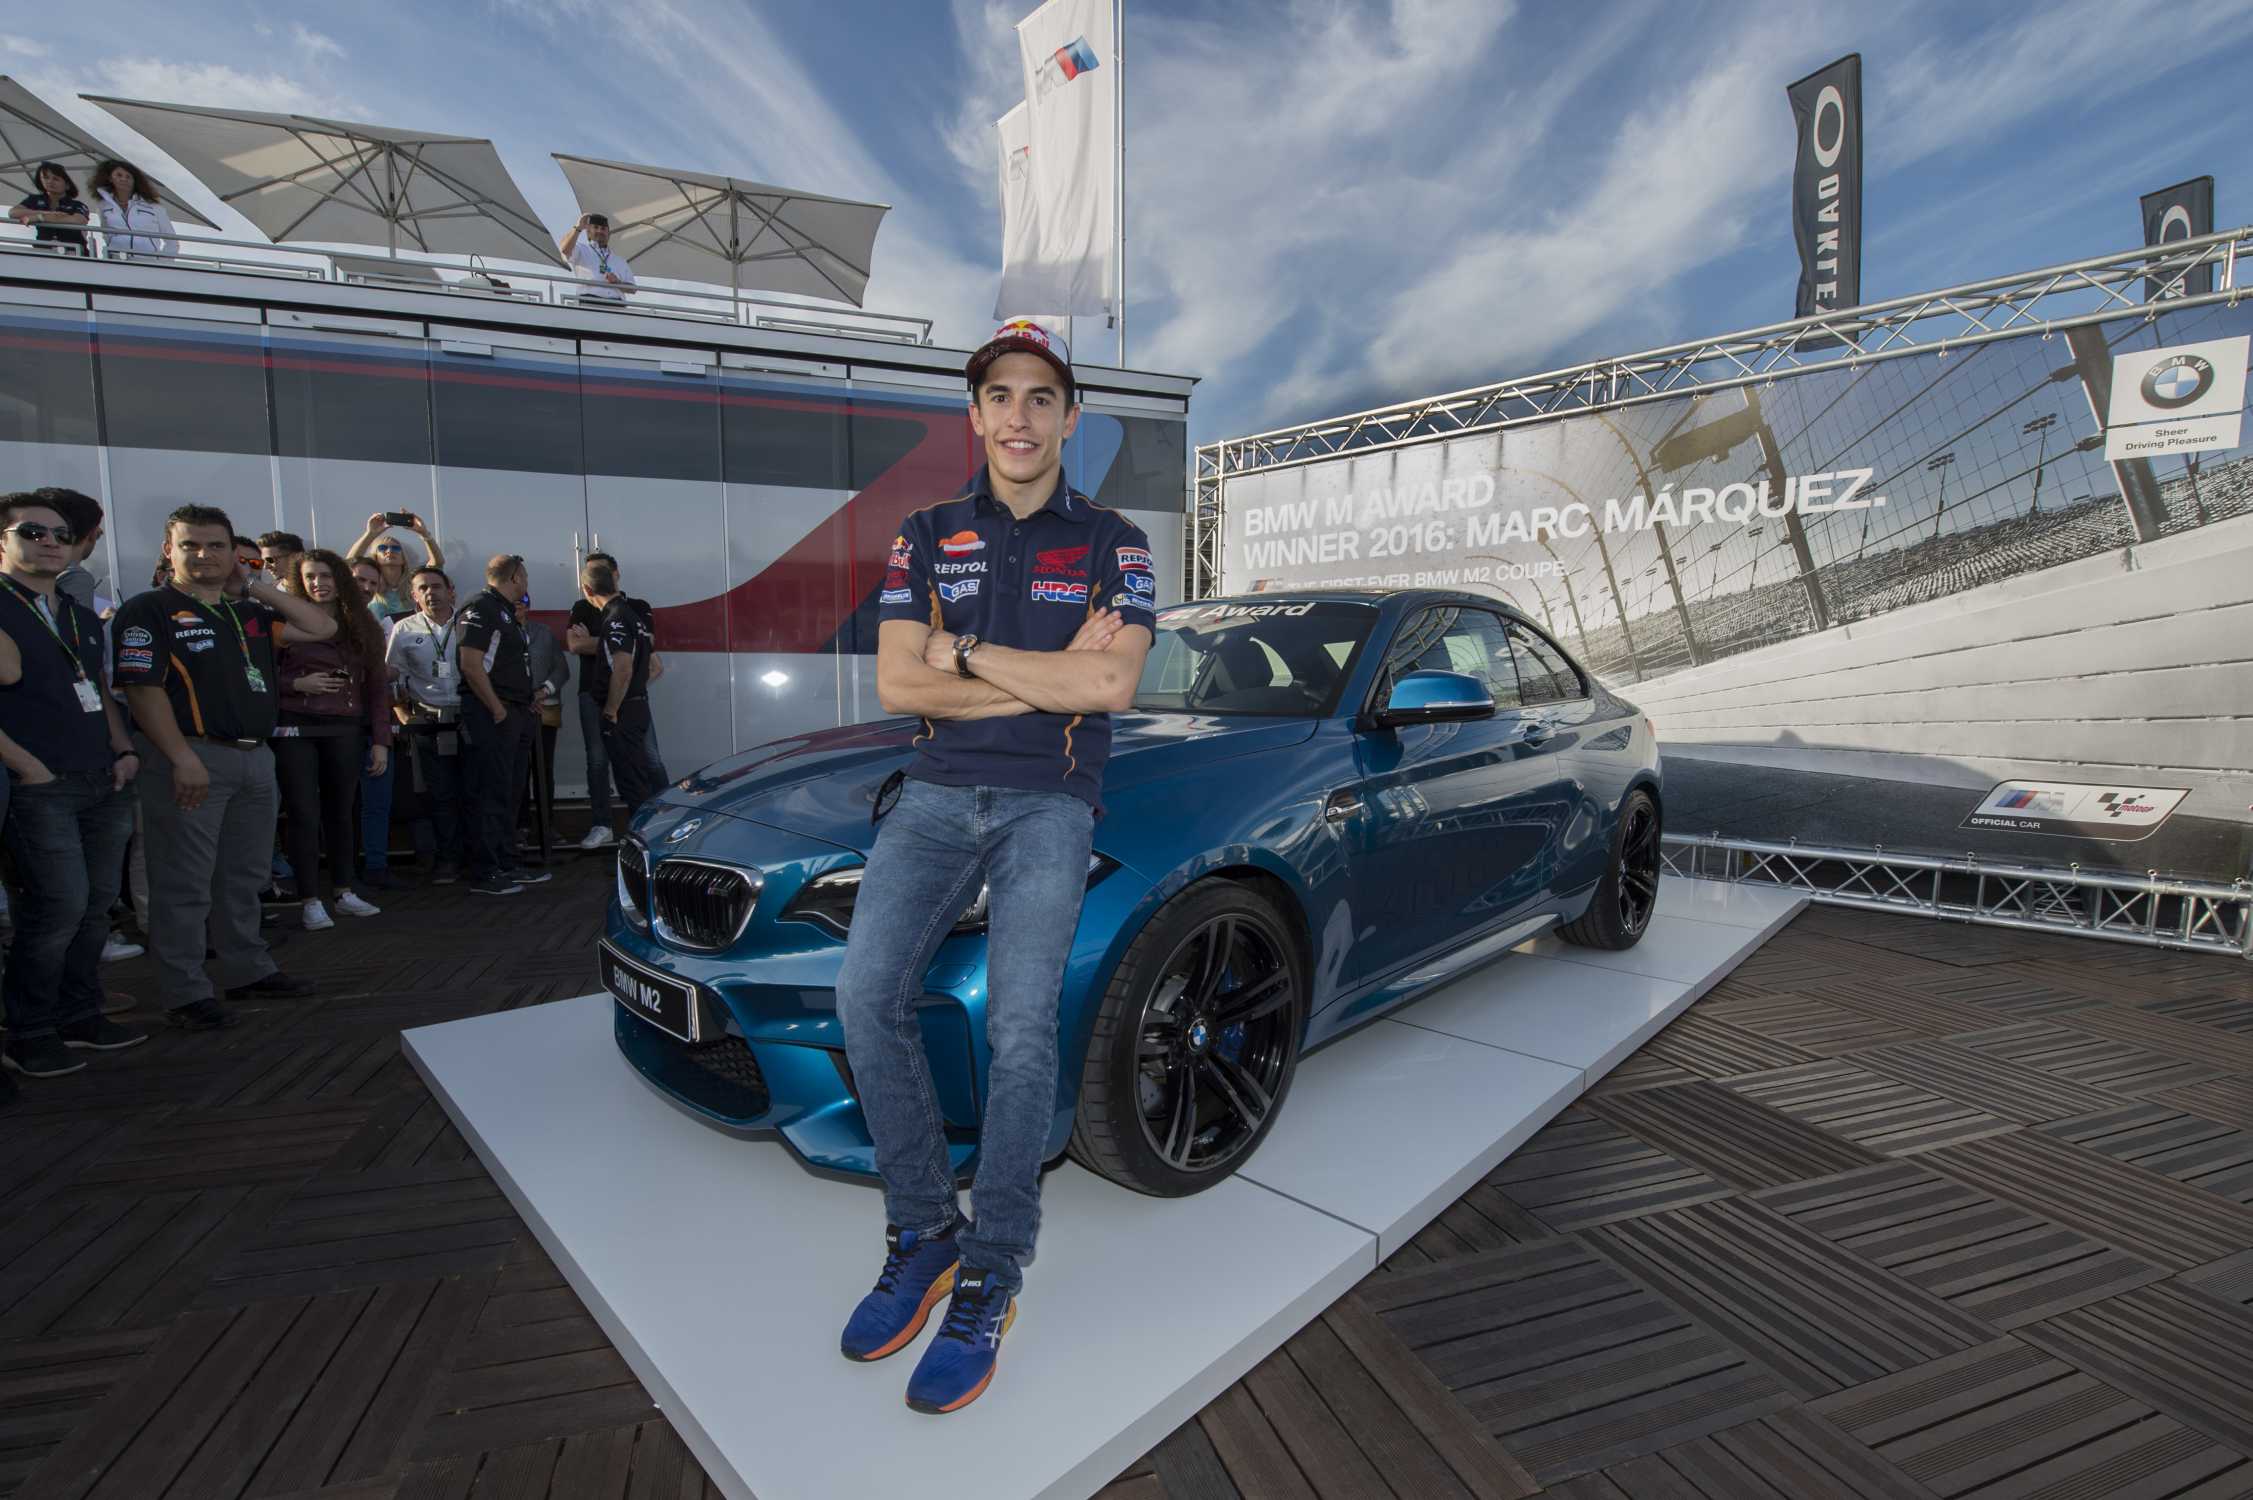 BMW M Award 2016: Marc Márquez, BMW M2 Coupé